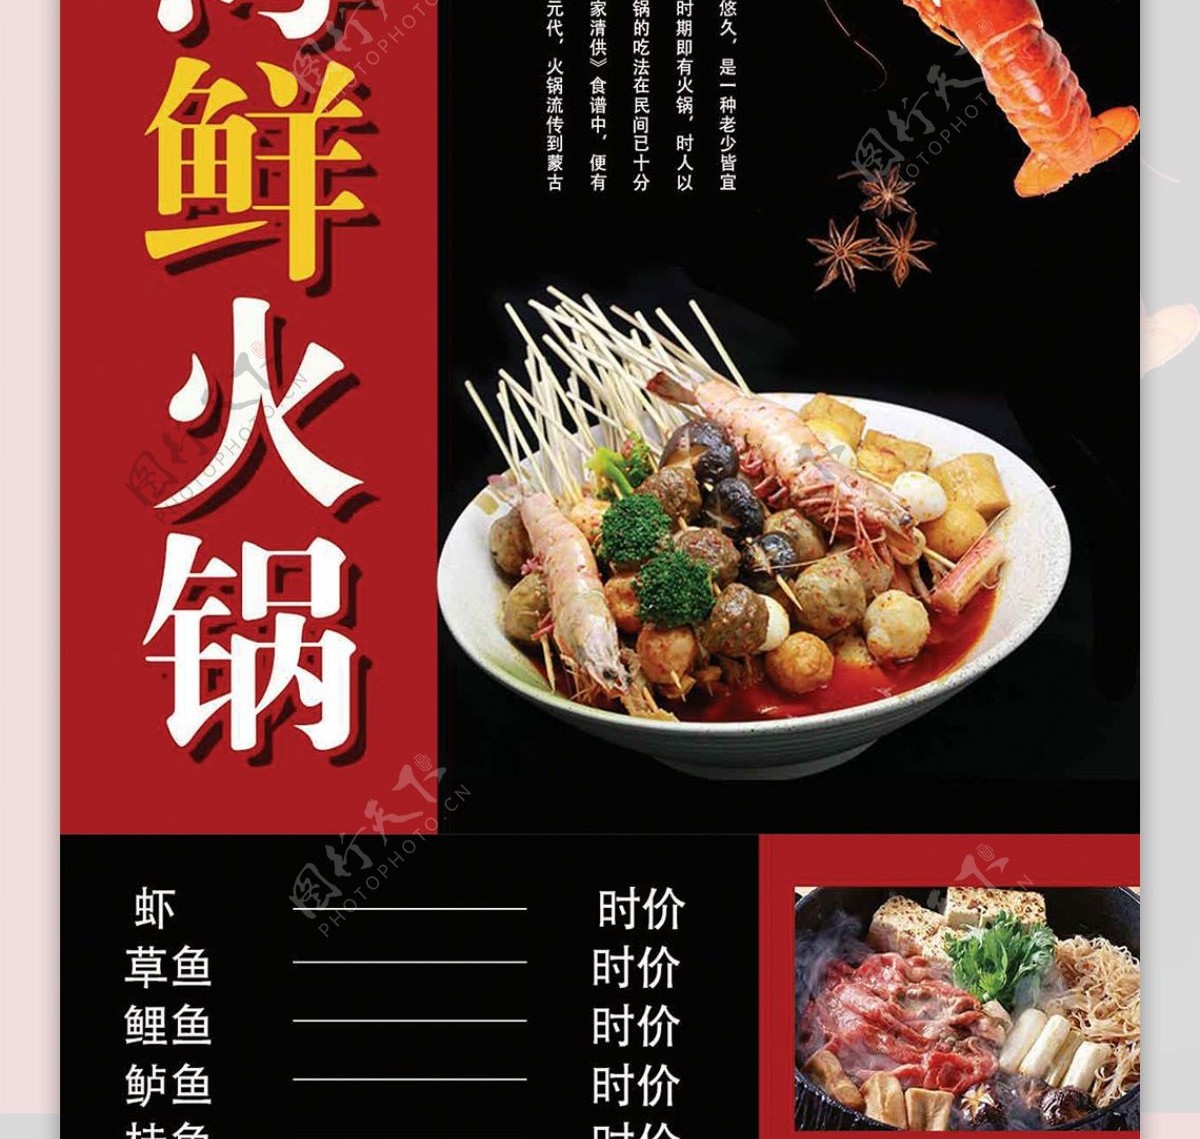 红色简约大气招牌海鲜火锅菜谱设计